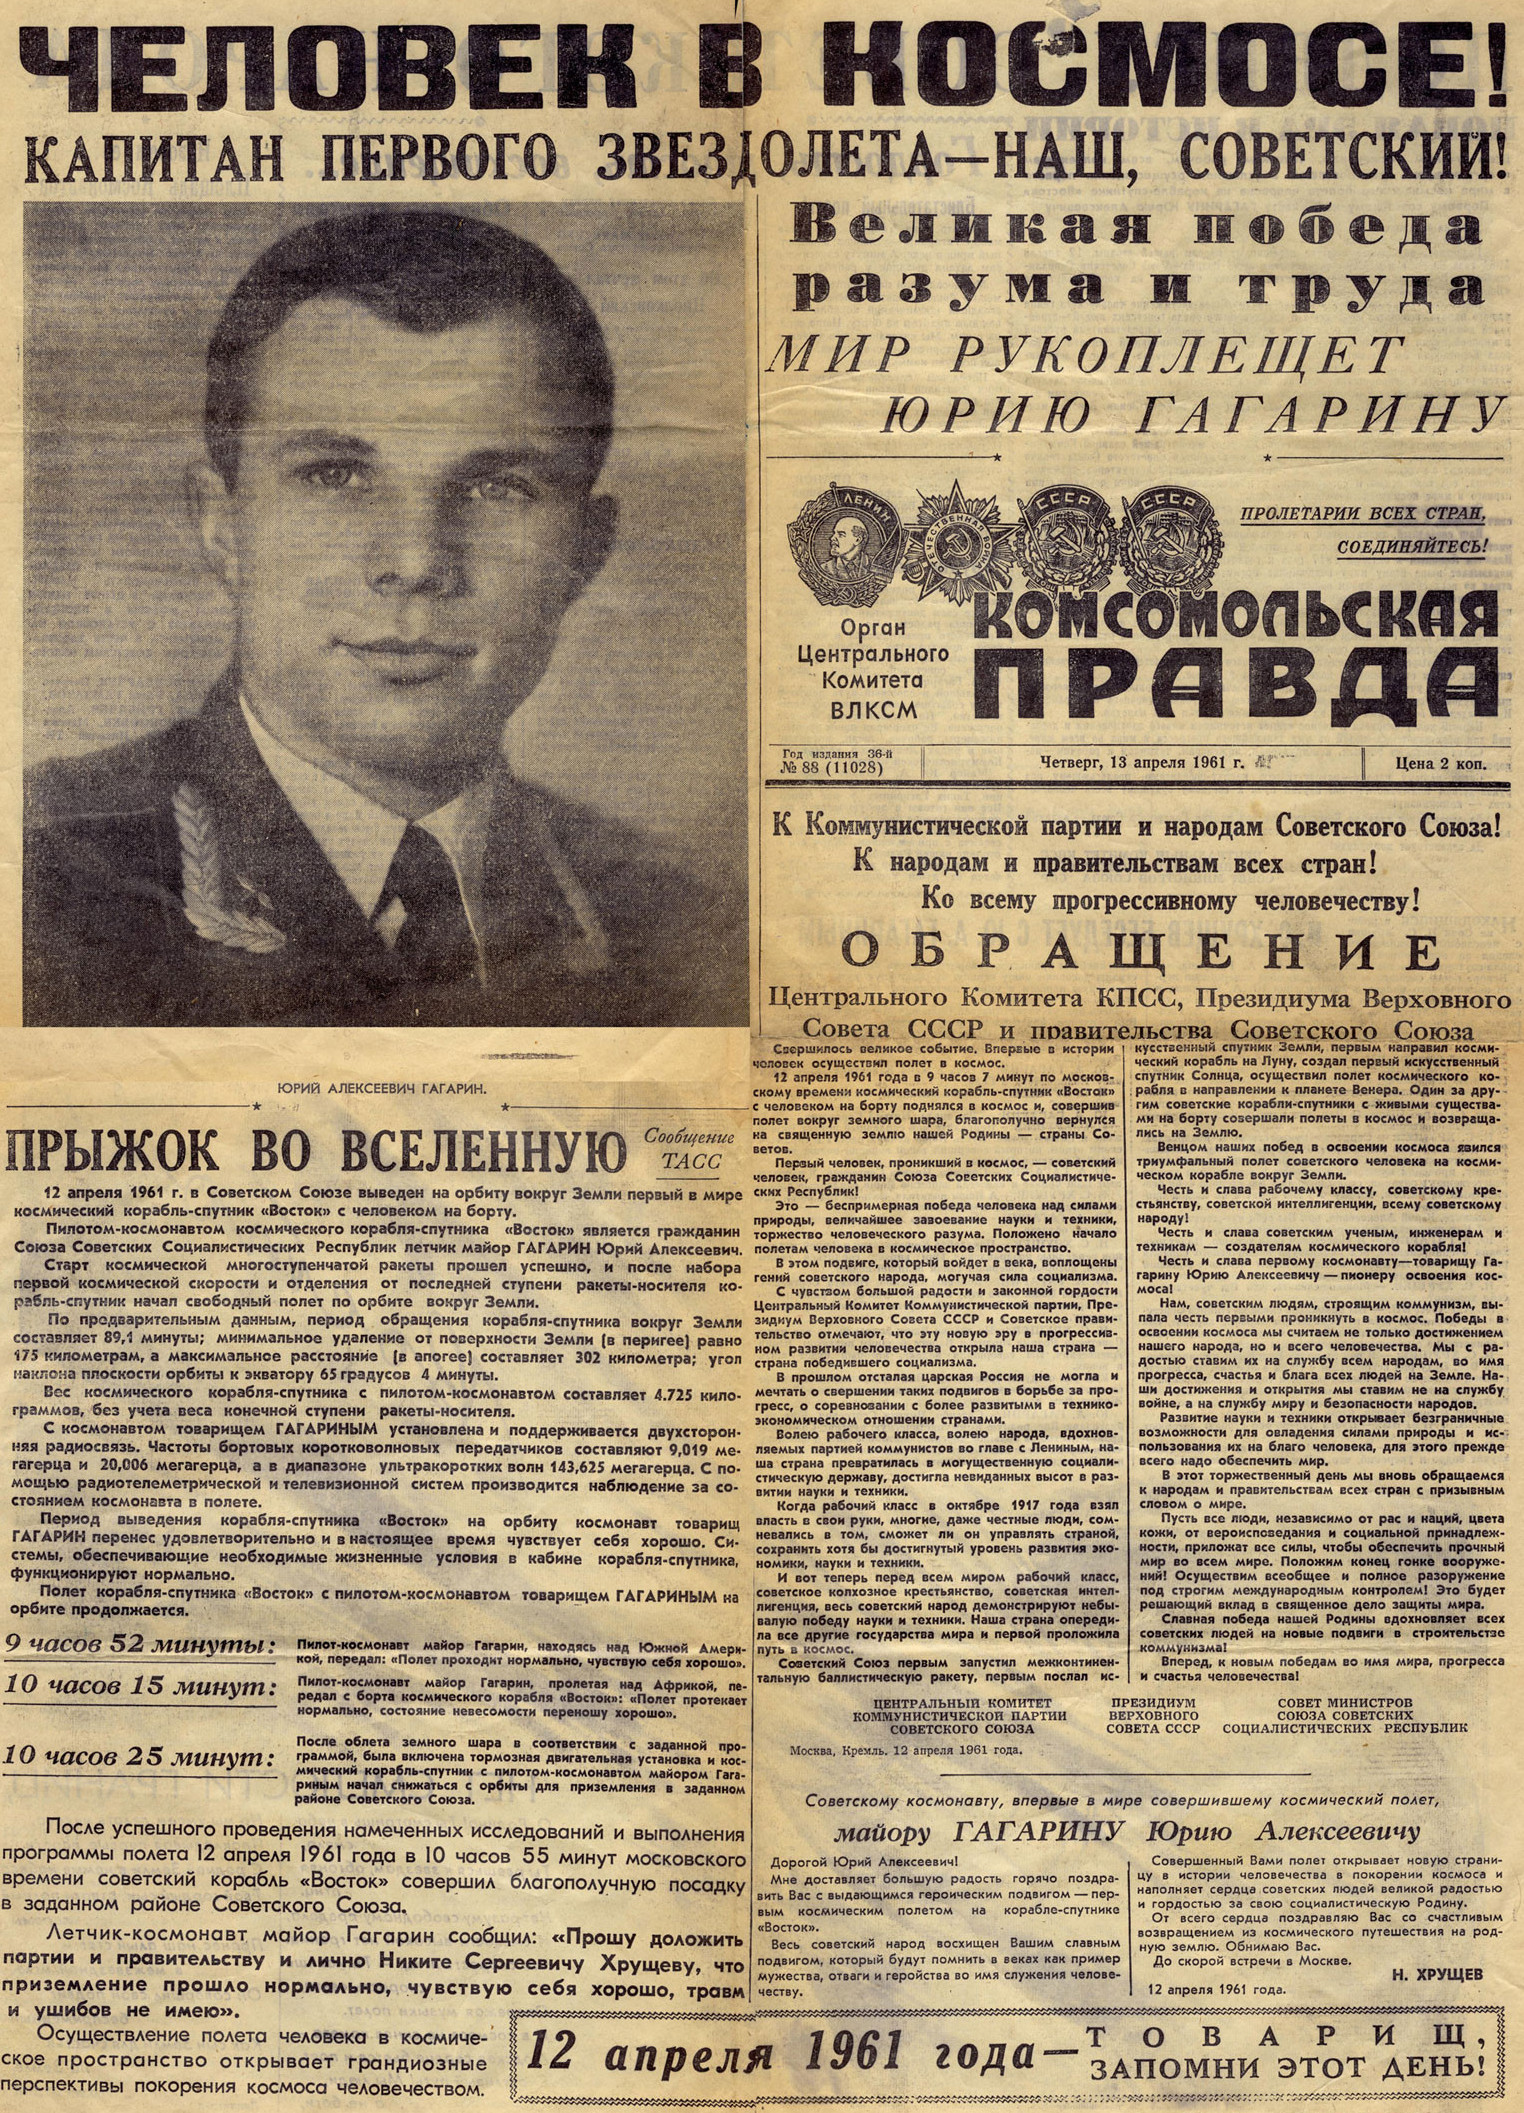 Первый полет человека в космос. "Комсомольская правда" от 13 апреля 1961 года.